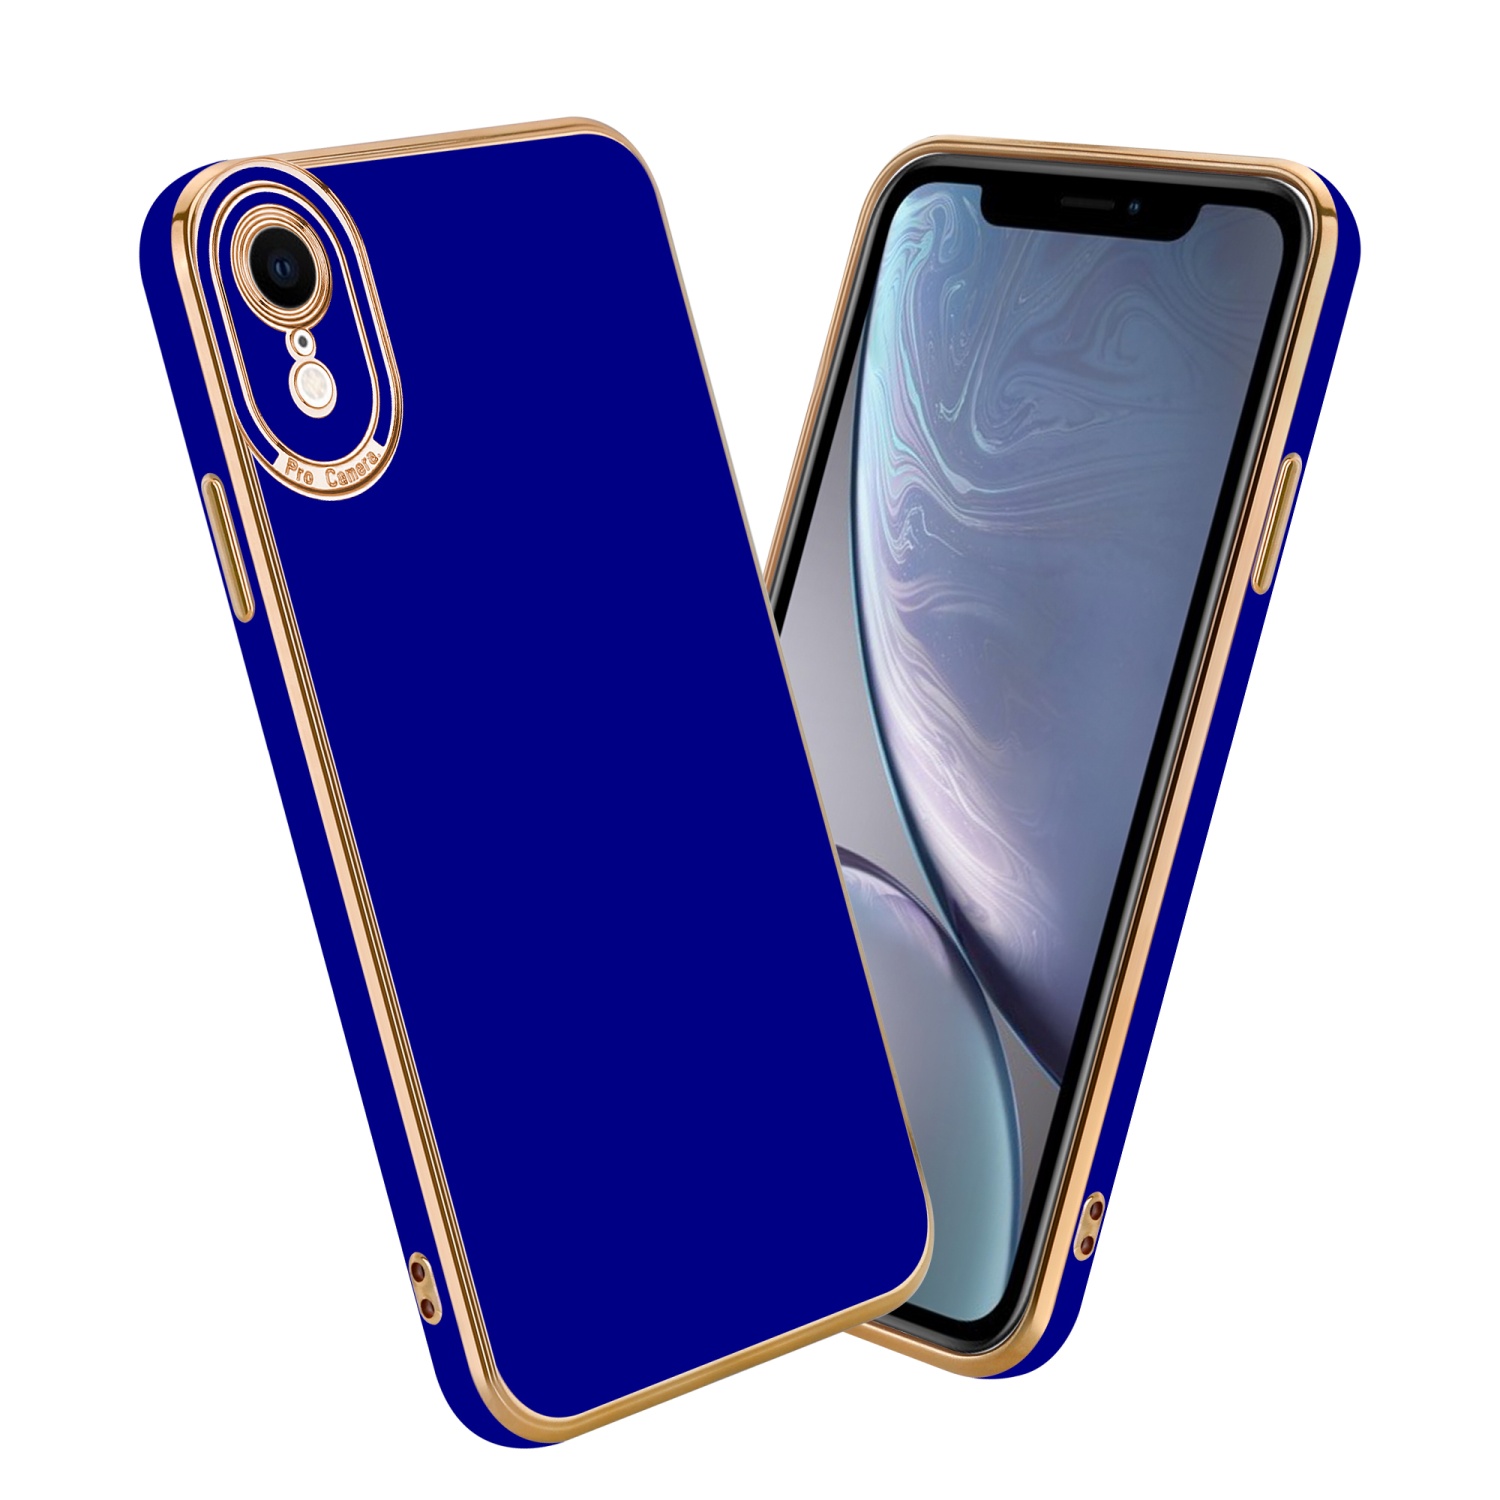 Coque pour Apple iPhone XR en Glossy Bleu - Or Rose Housse de protection Étui en silicone TPU flexible et avec protection pour appareil photo